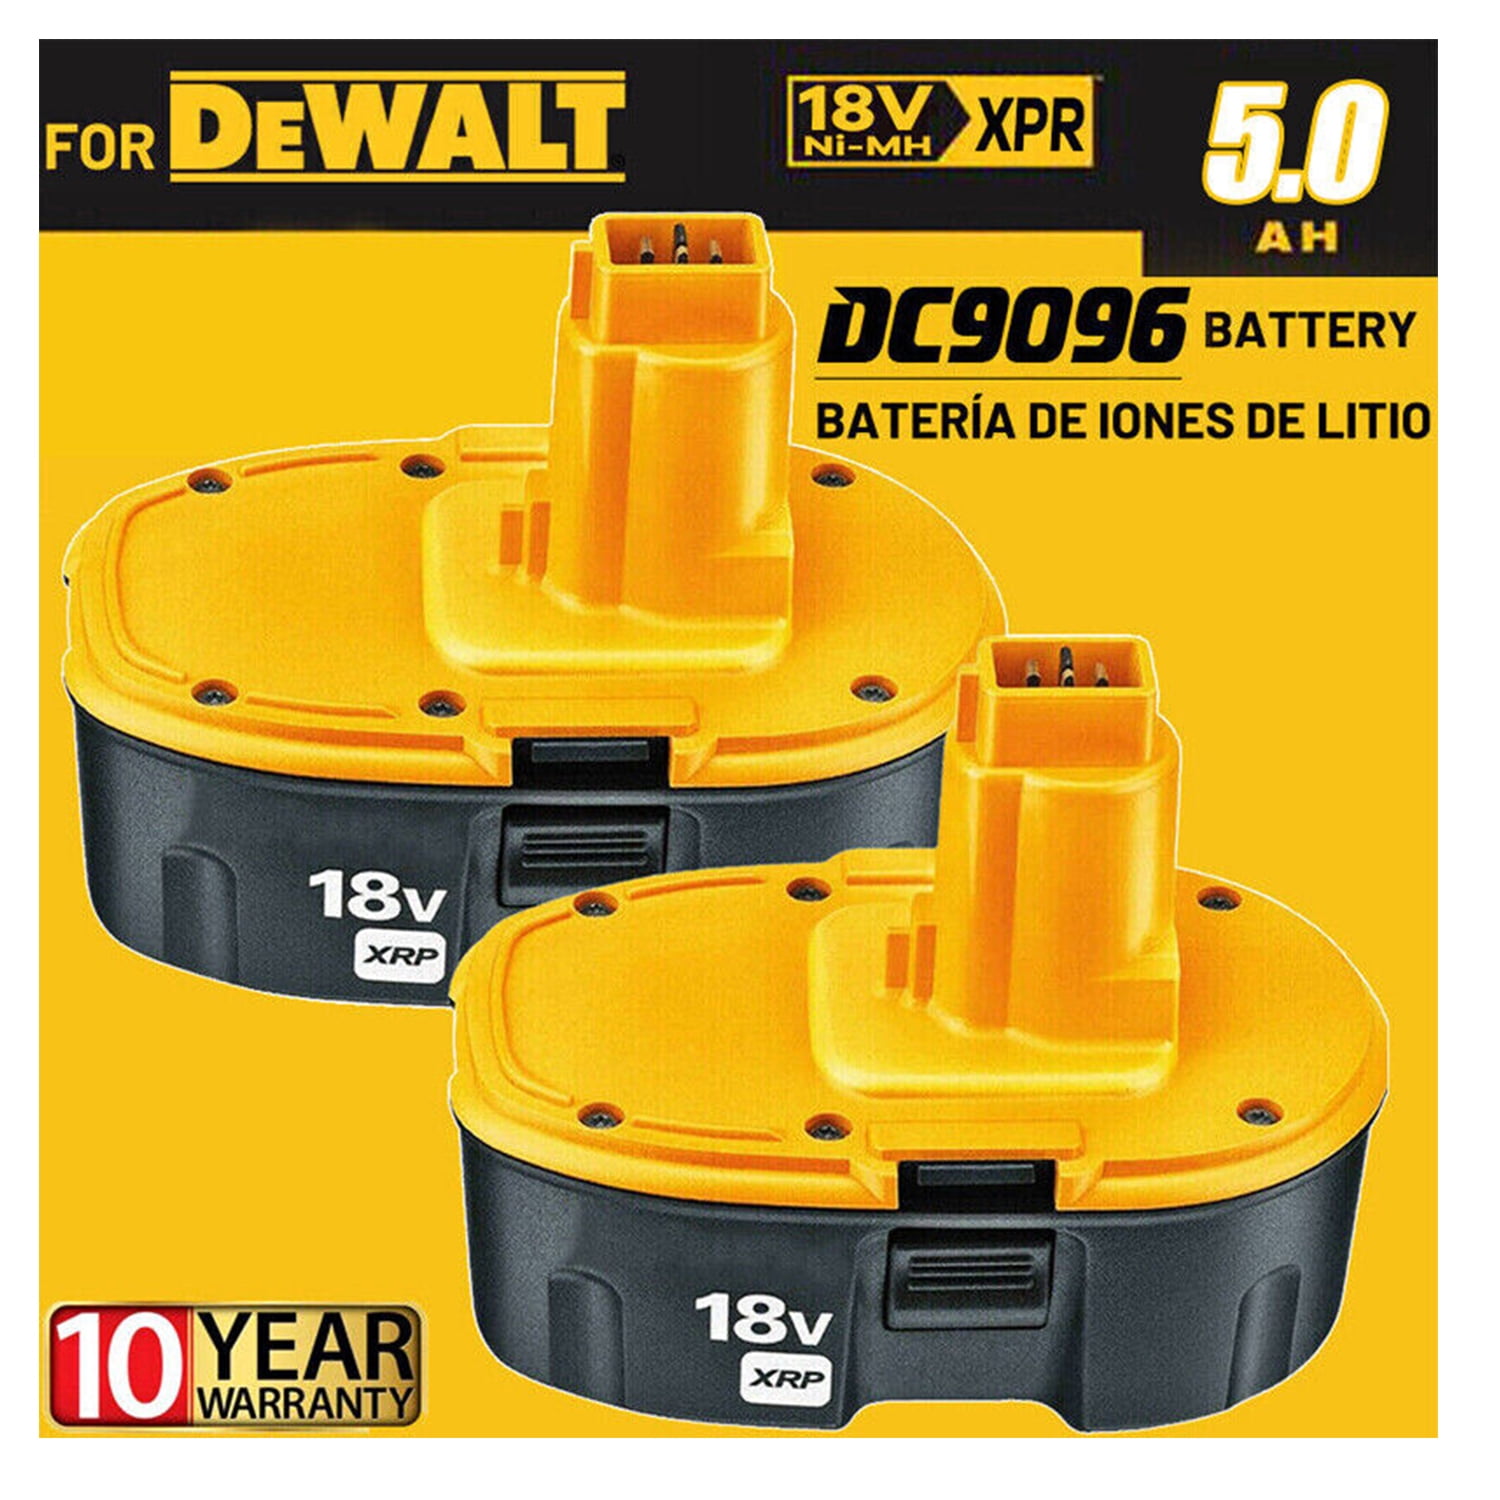 18V Battery for Dewalt 18 Volt XRP Battery DC9096-2 DC9098 DC9099 DW9096 - Walmart.com